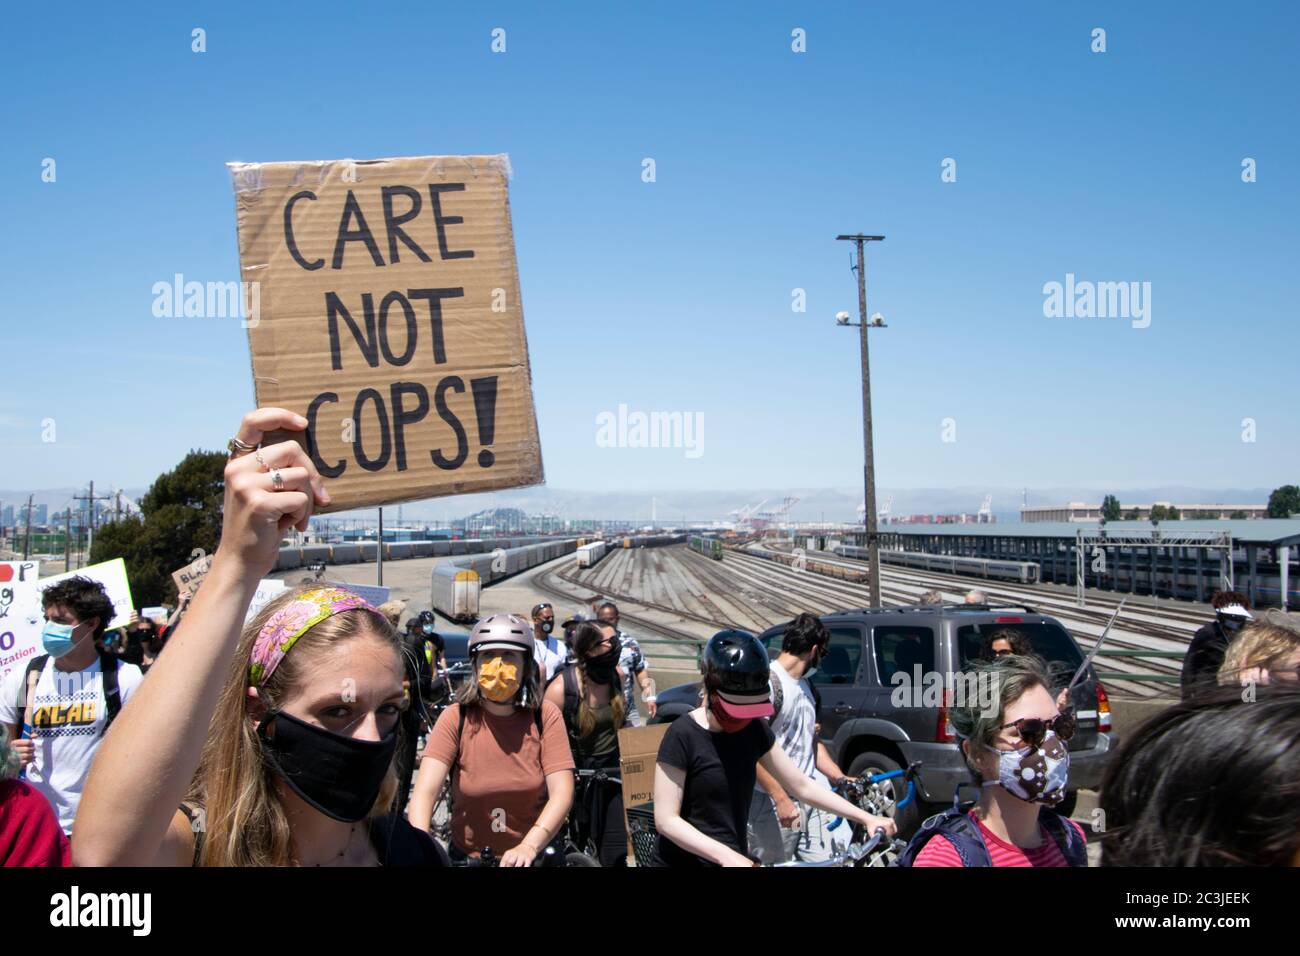 Un manifestant porte un signe qui dit : « Care not flics! » Lors d'une manifestation Black Lives Matter, le 19 juin 2020, au port d'Oakland. Banque D'Images